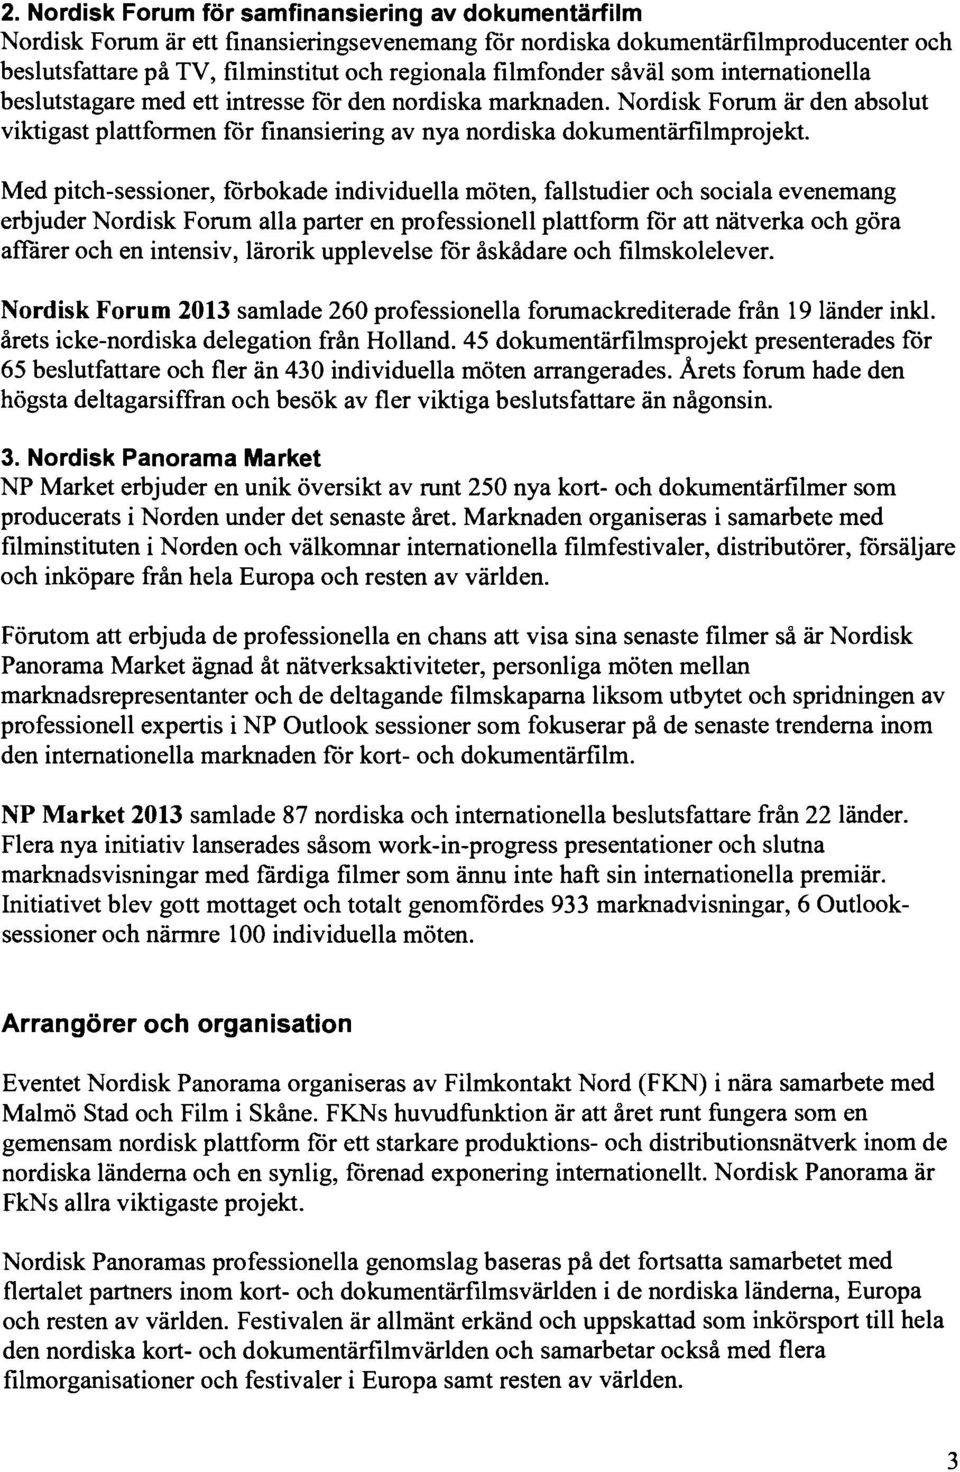 Nordisk Forum är den absolut viktigast plattformen för finansiering av nya nordiska dokumentärfilmprojekt.